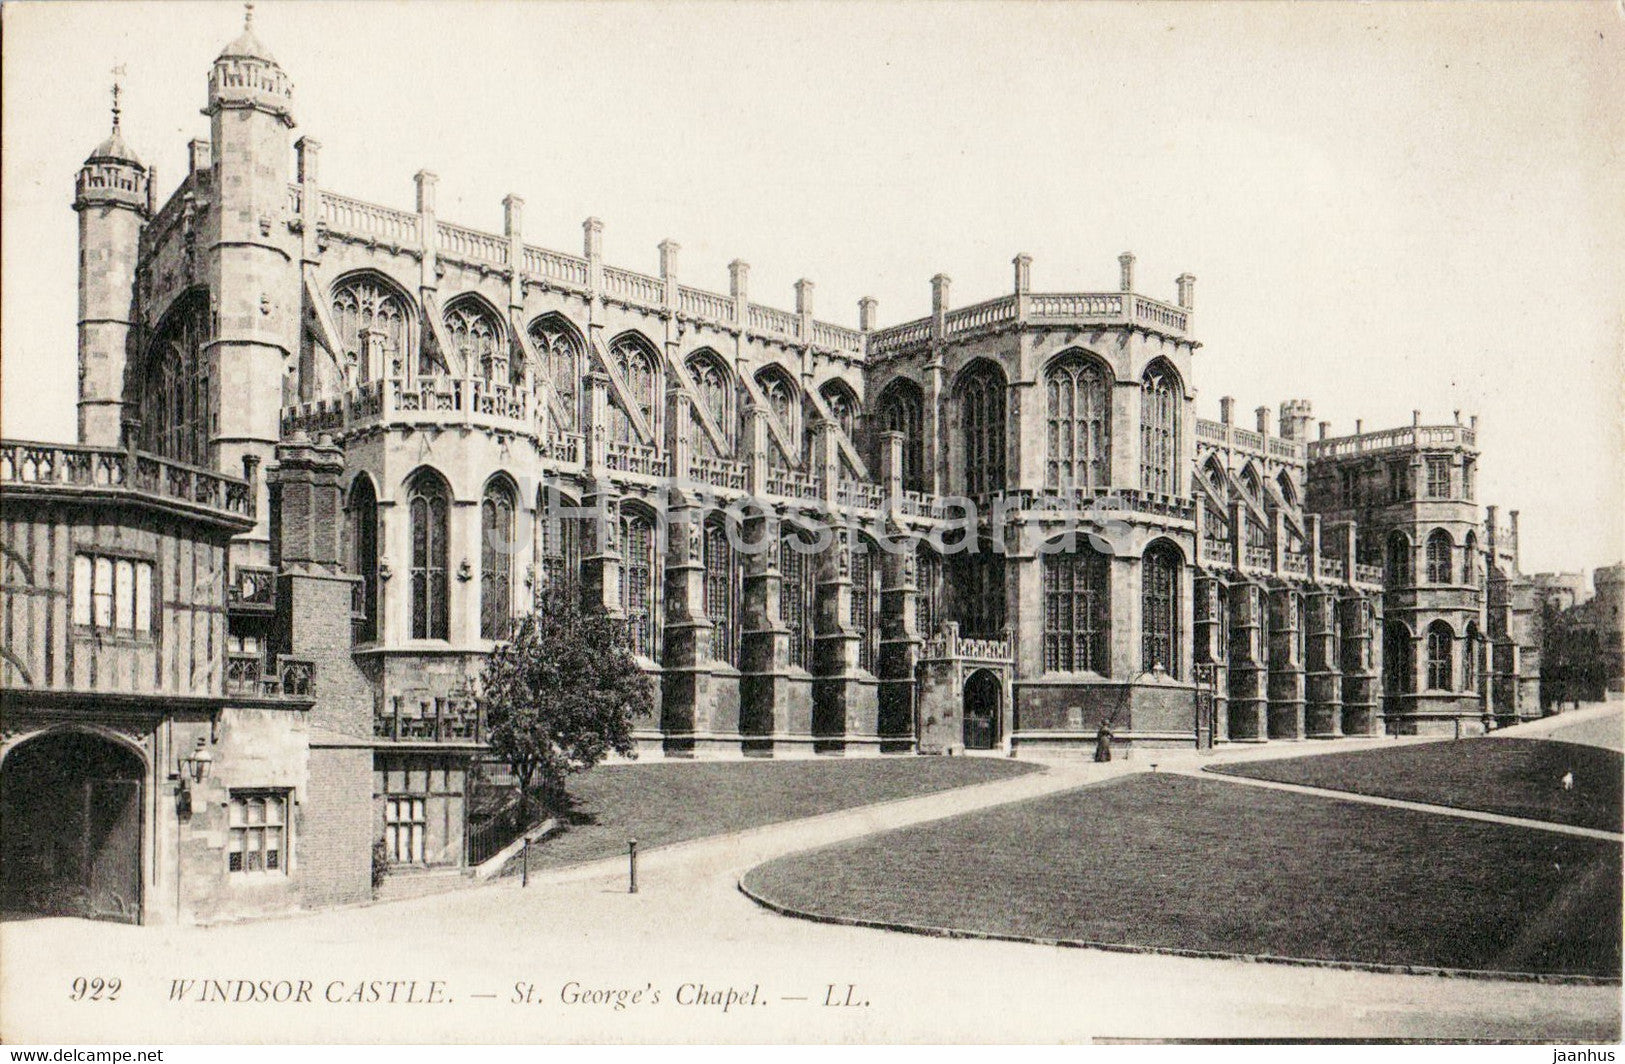 Windsor Castle - St George's Chapel - 922 - old postcard - England - United Kingdom - unused - JH Postcards